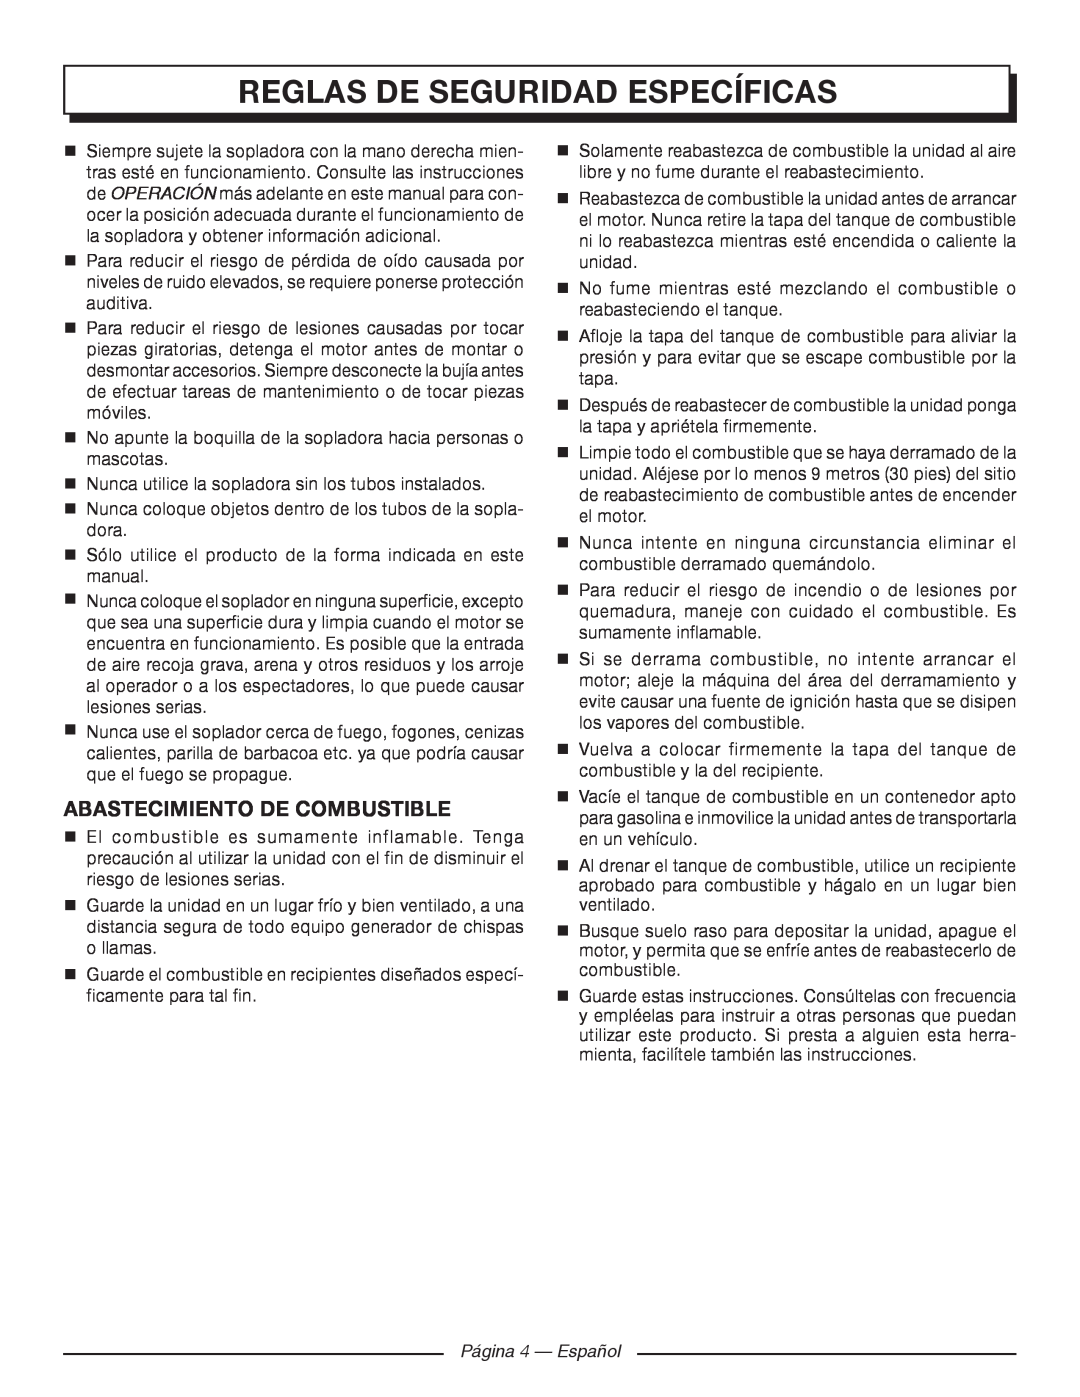 Homelite UT09520 manuel dutilisation Reglas De Seguridad Específicas, Abastecimiento De Combustible, Página 4 - Español 